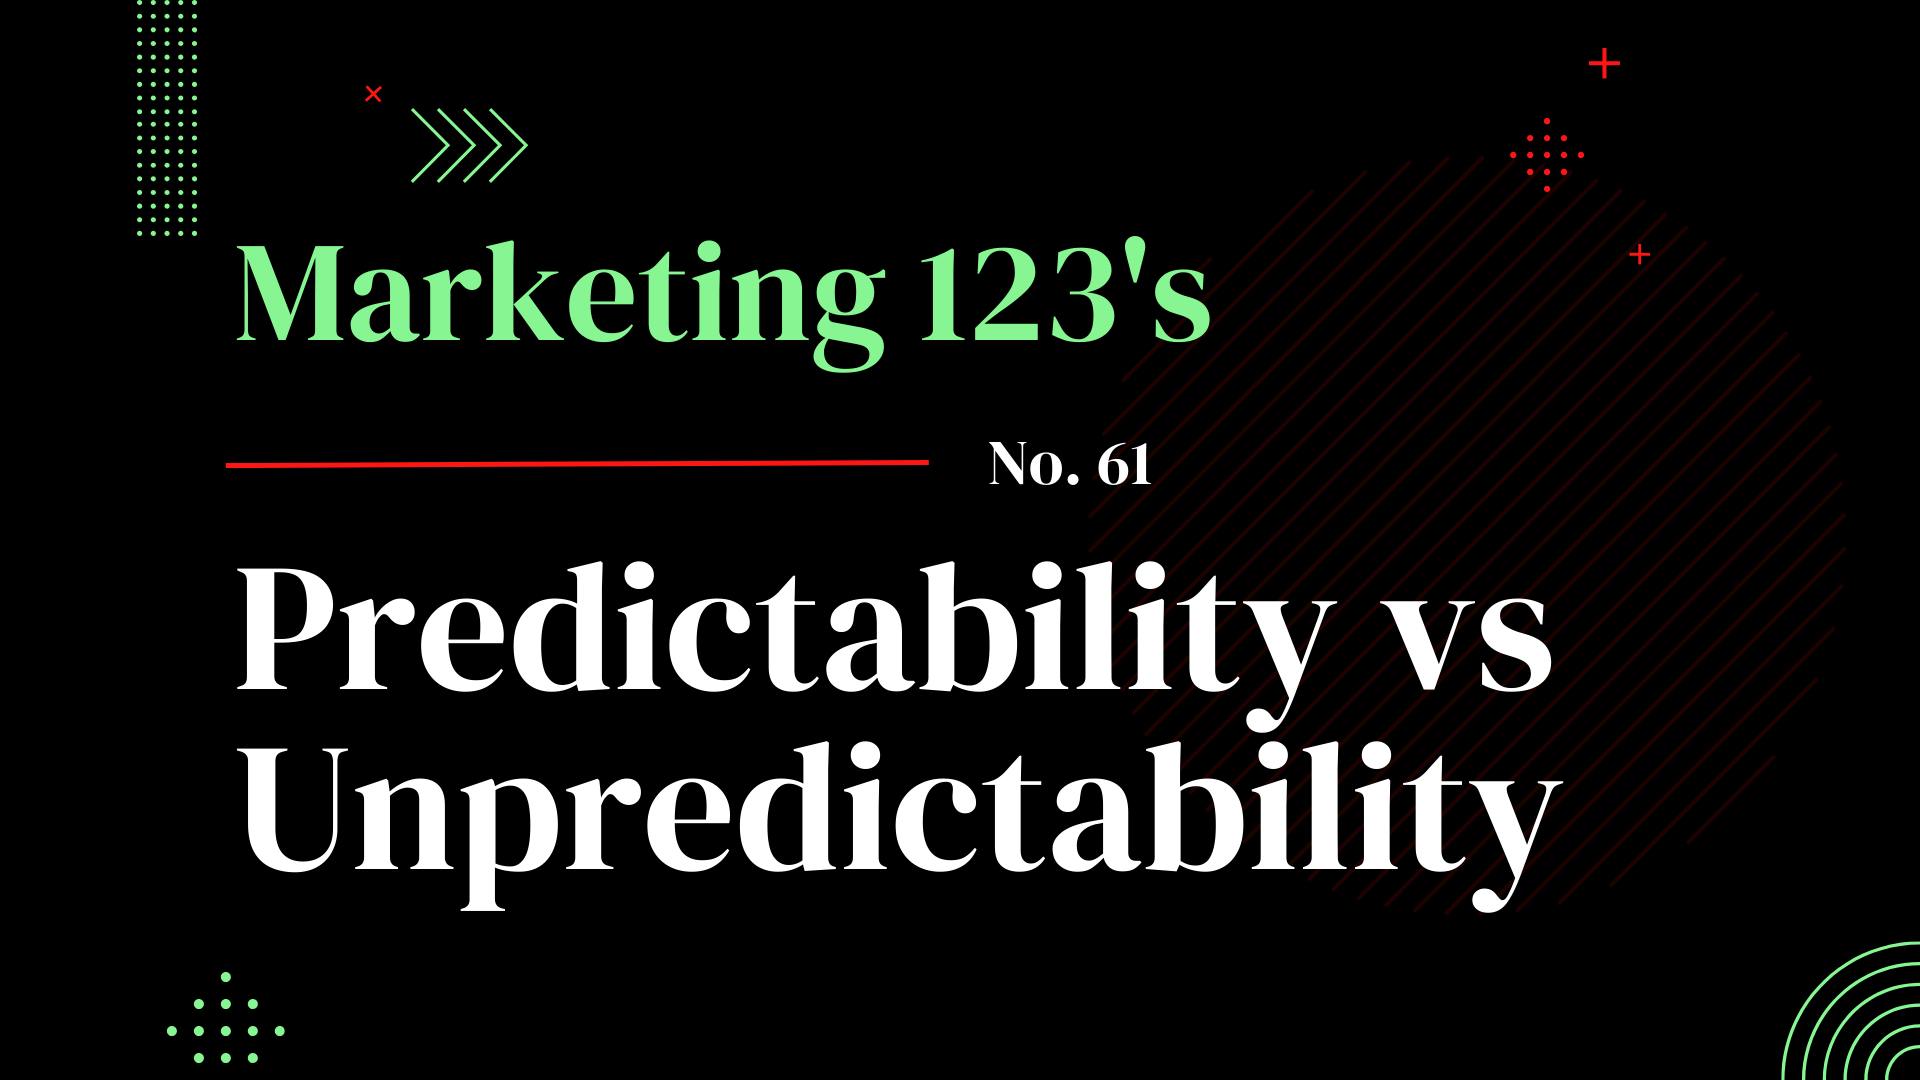 Predictability vs Unpredictability